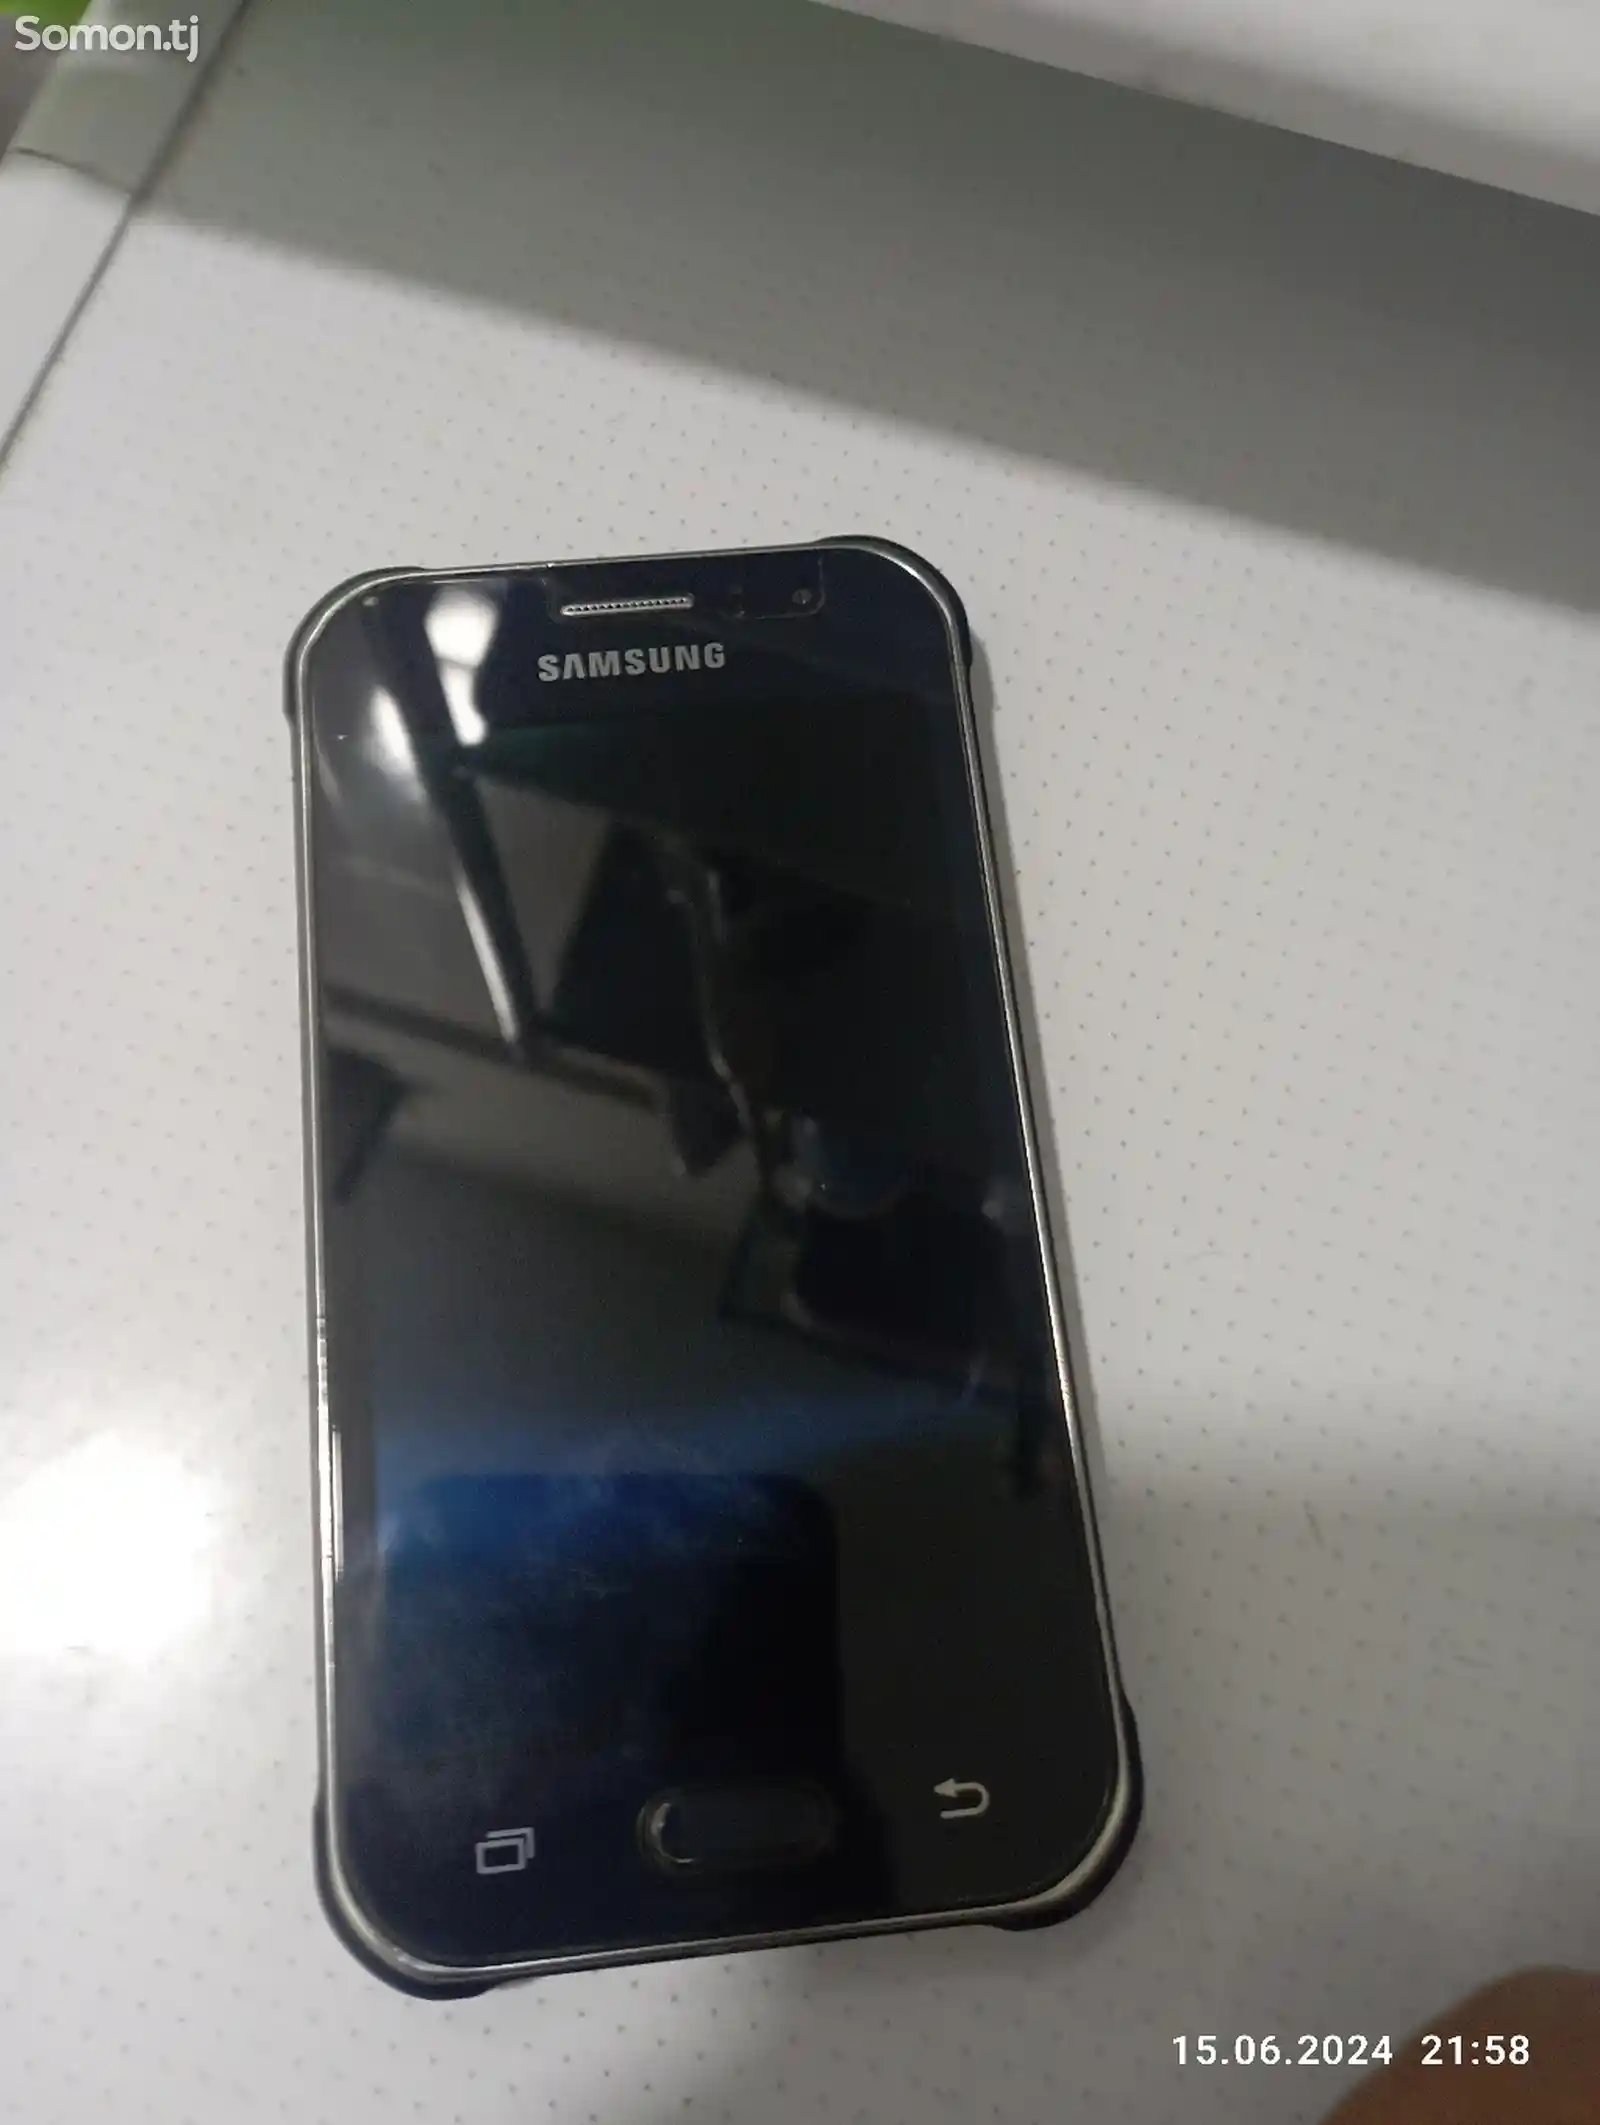 Samsung galaxy j1 ace-1